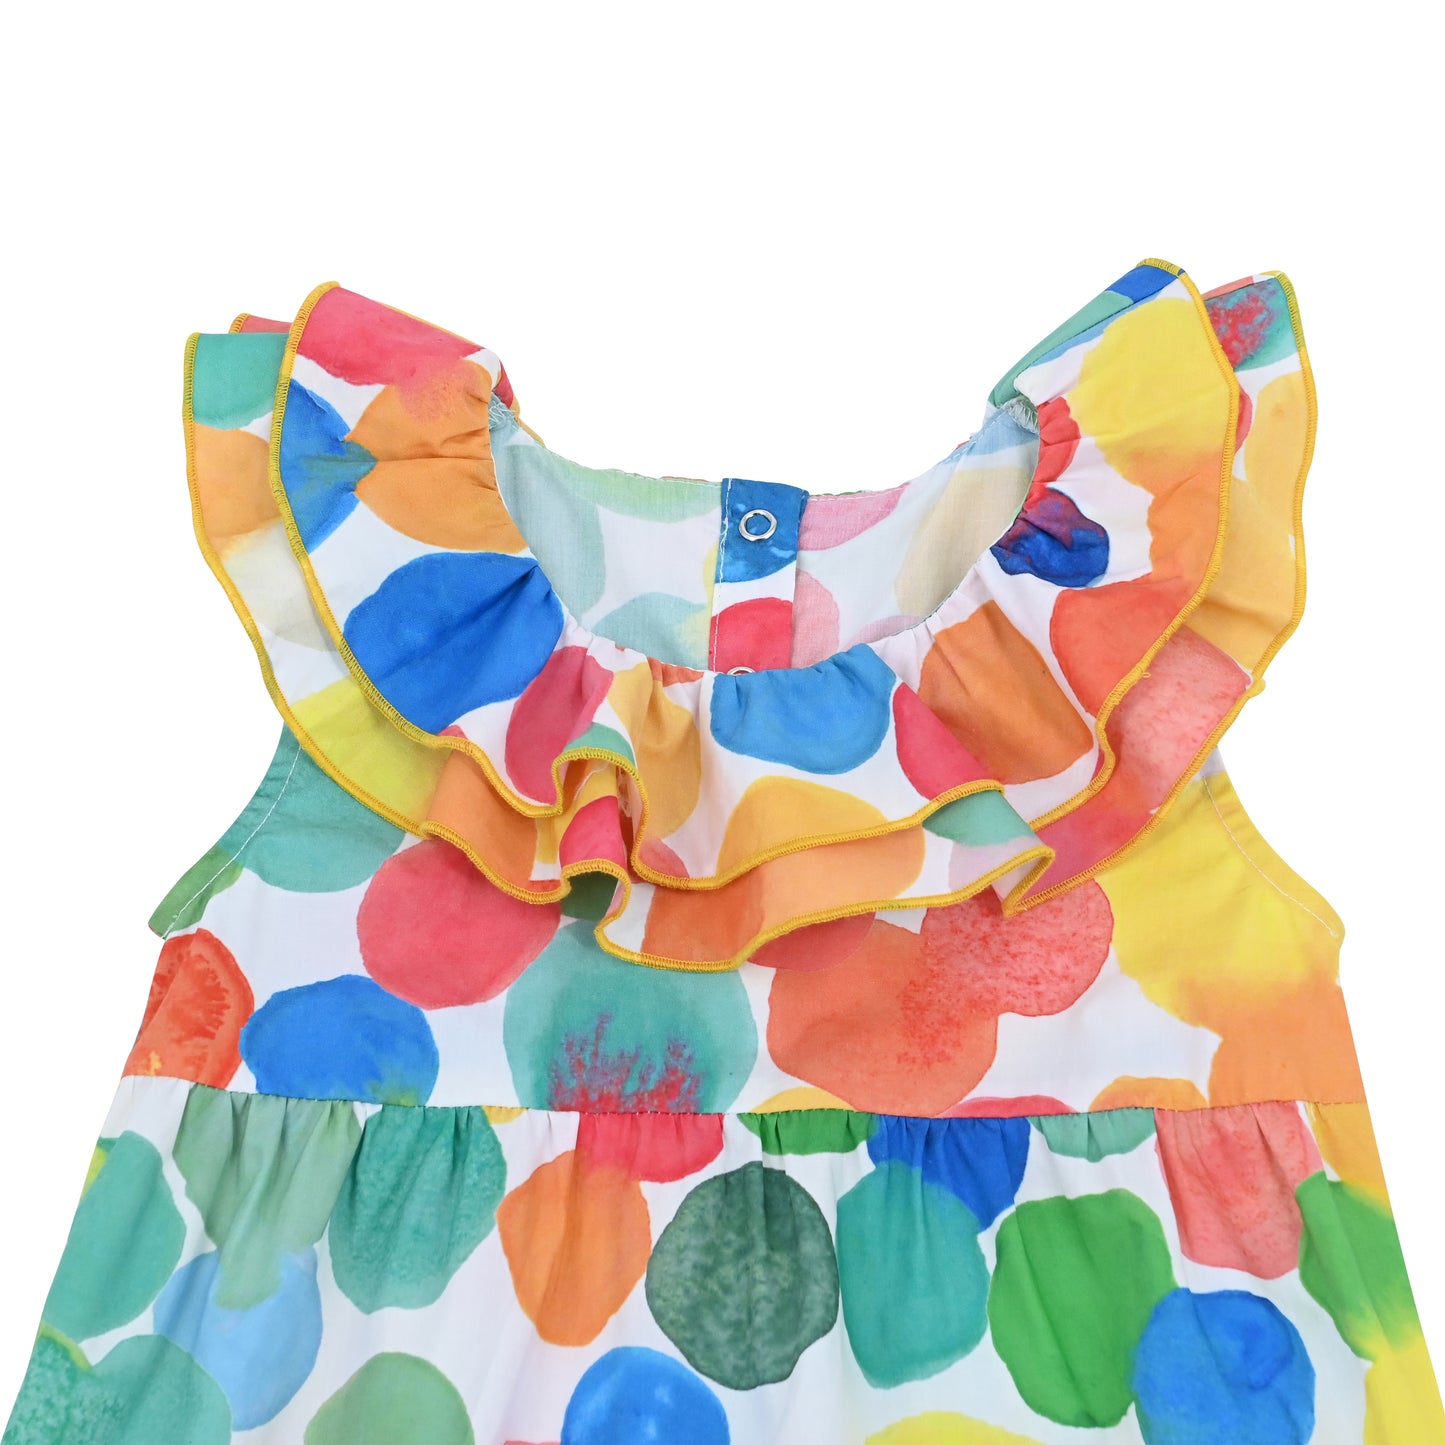 嬰兒衣服 - 彩色波點印花荷葉領背心連體衣